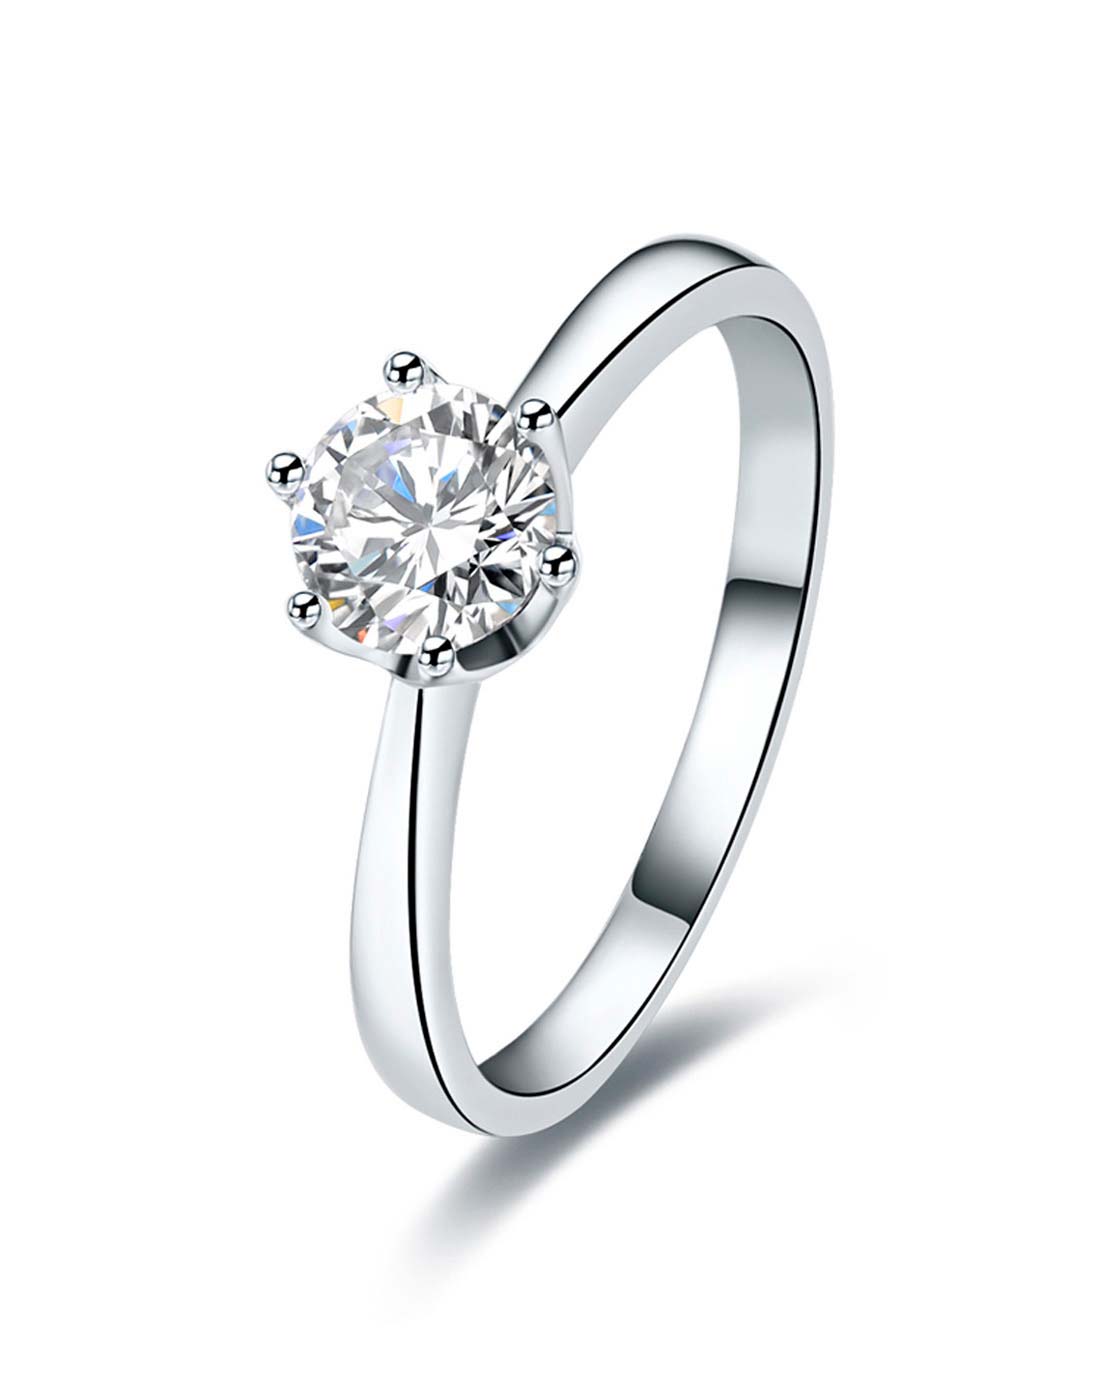 高清图|Enzo炫耀系列18K白金镶红宝及钻石戒指戒指图片1|腕表之家-珠宝